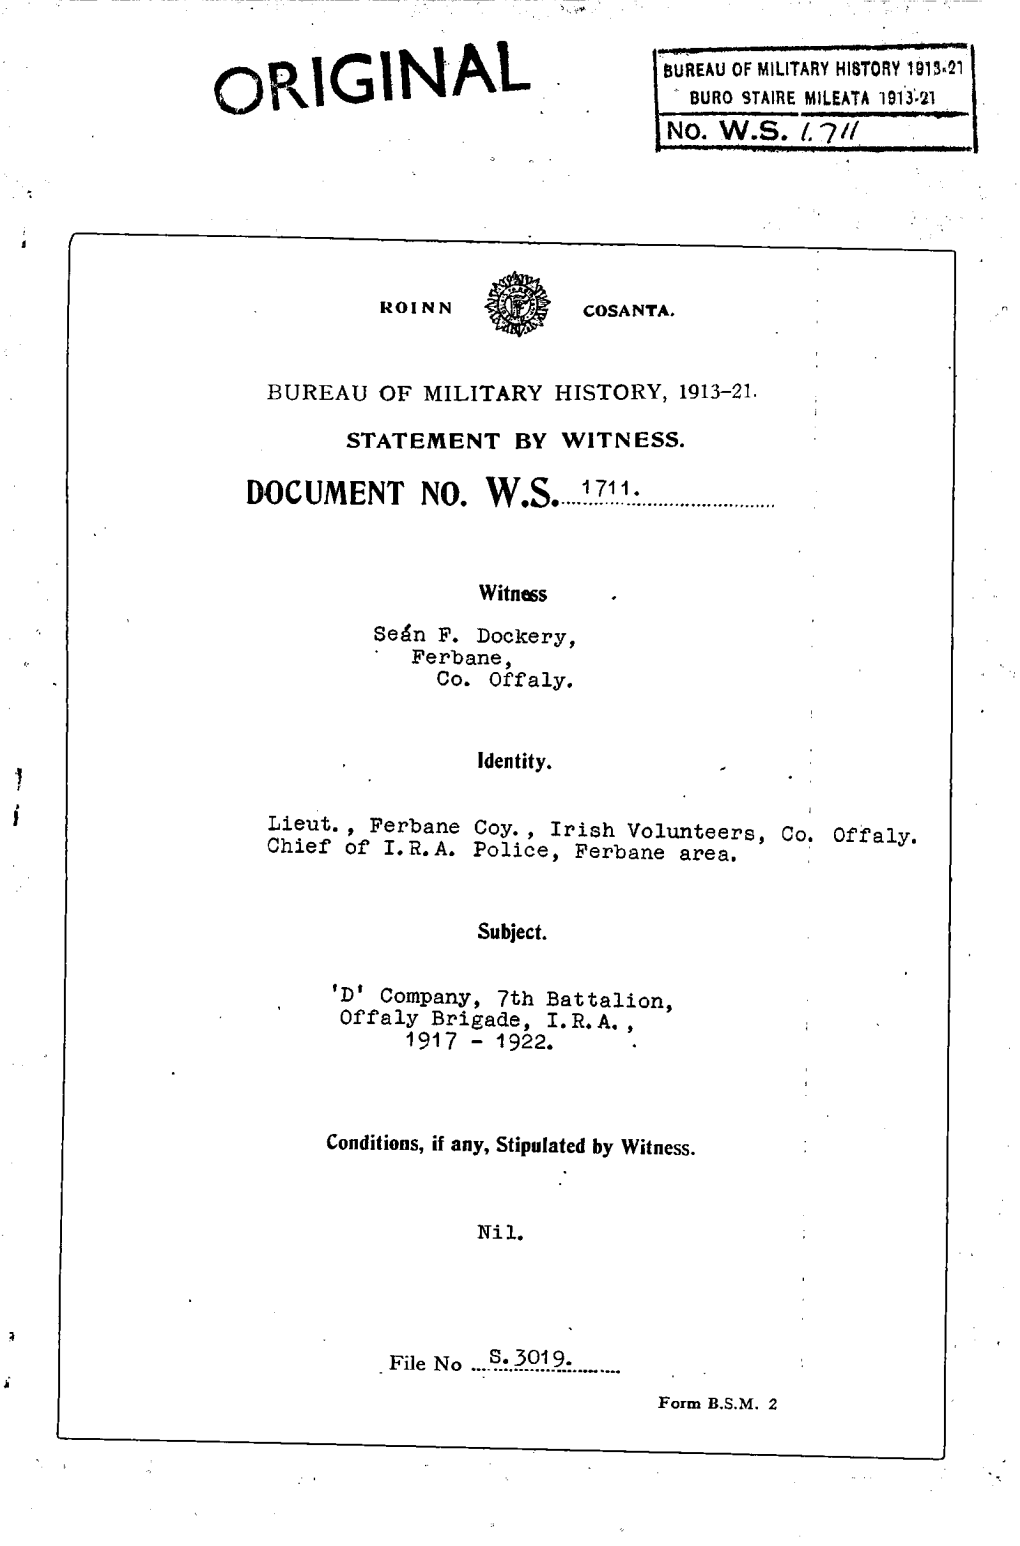 ROINN COSANTA. BUREAU of MILITARY HISTORY, 1913-21. STATEMENT by WITNESS. DOCUMENT NO. W.S. 1711 Witness Seán F. Dockery, Ferba